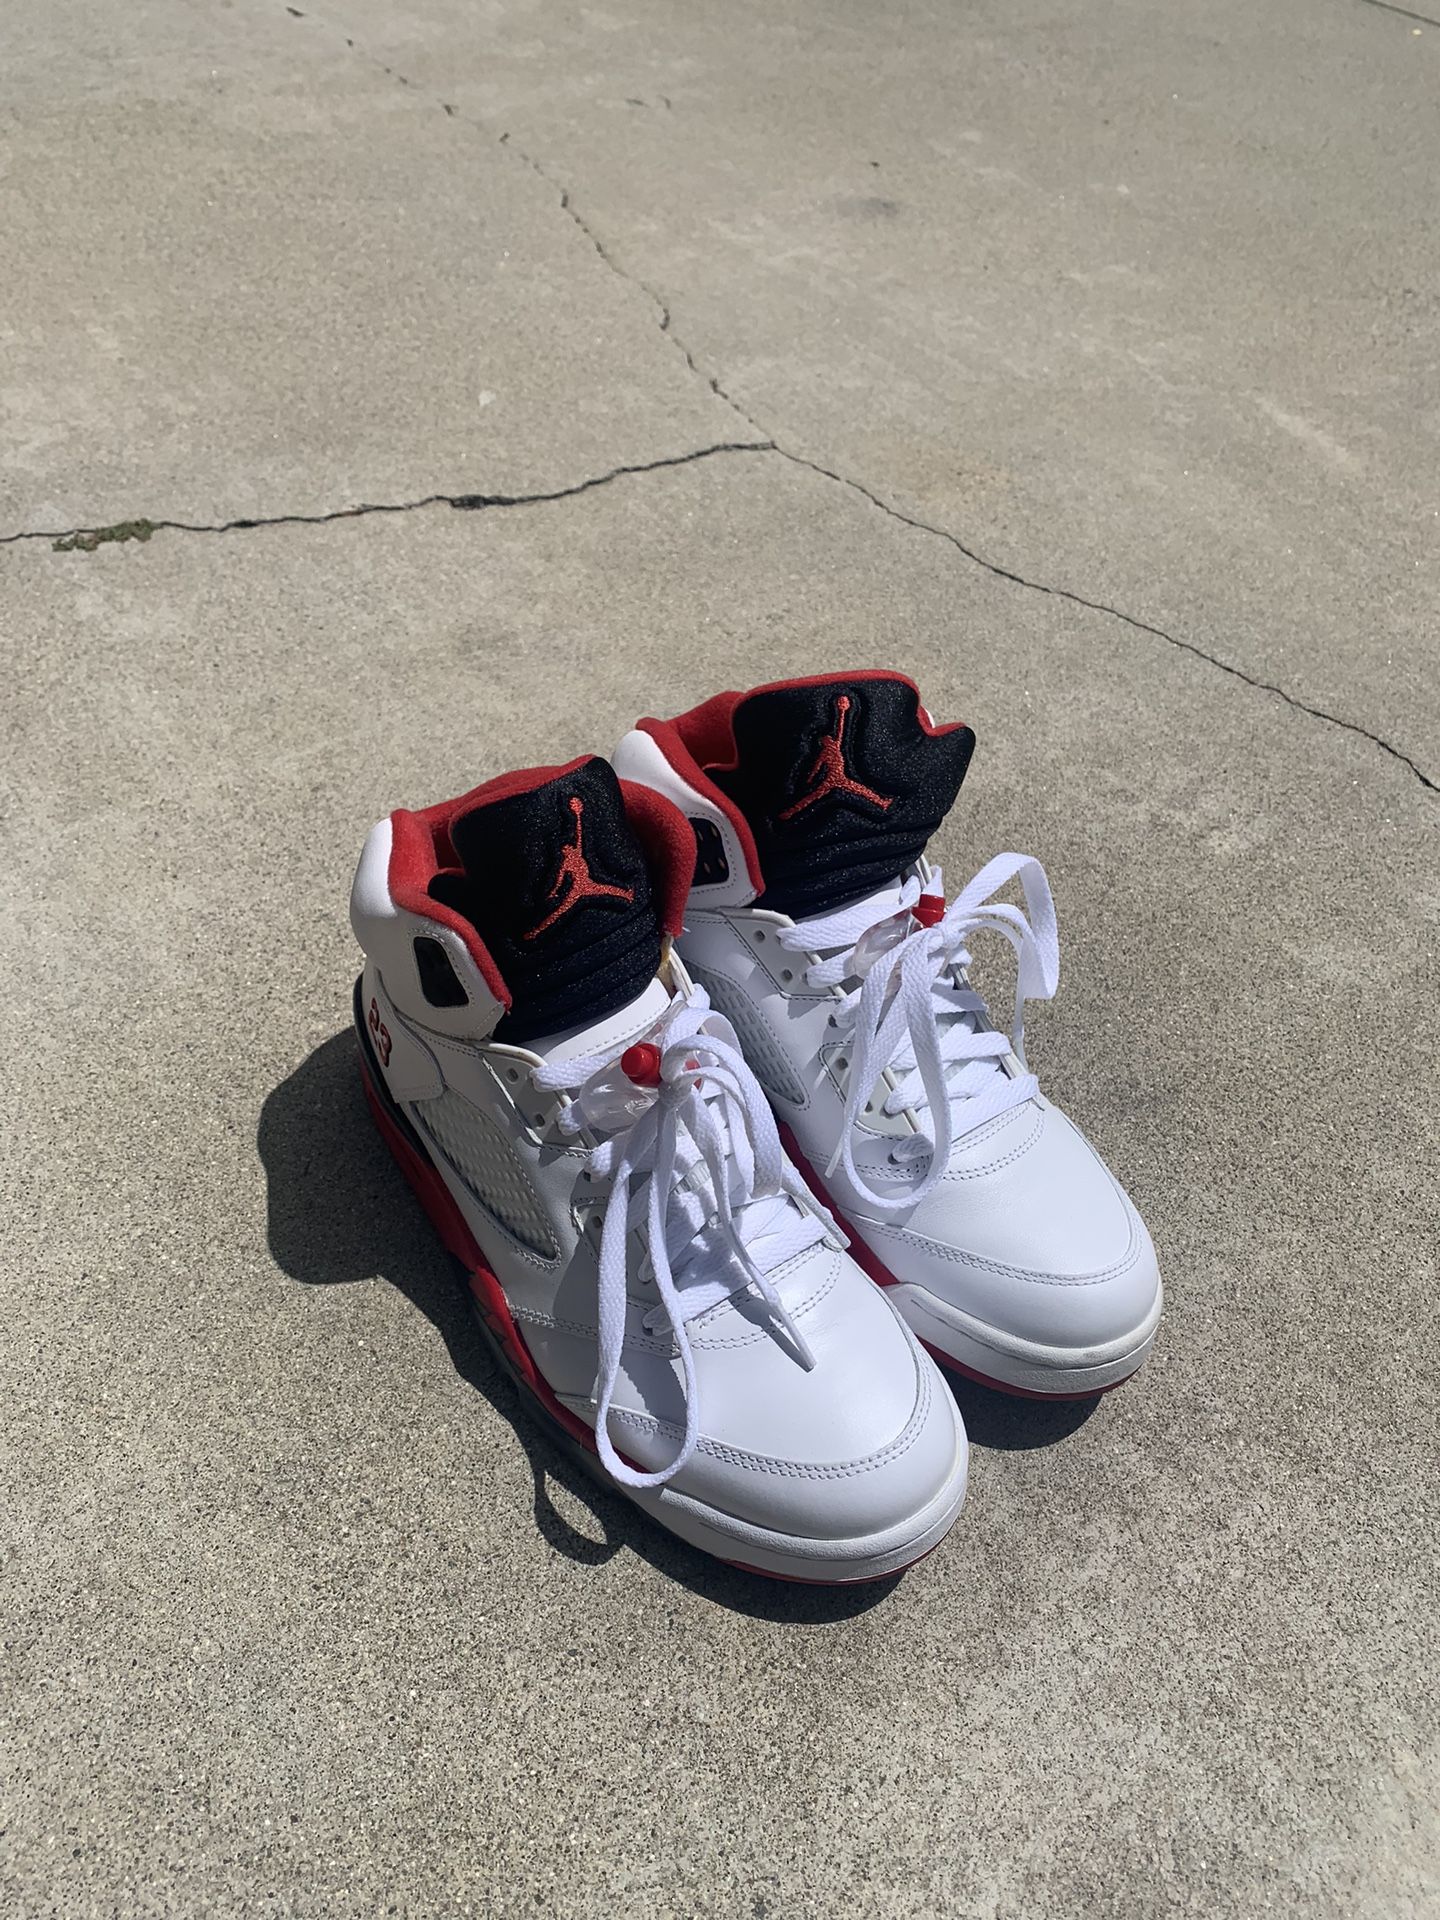 Jordan 5 Size 8.5